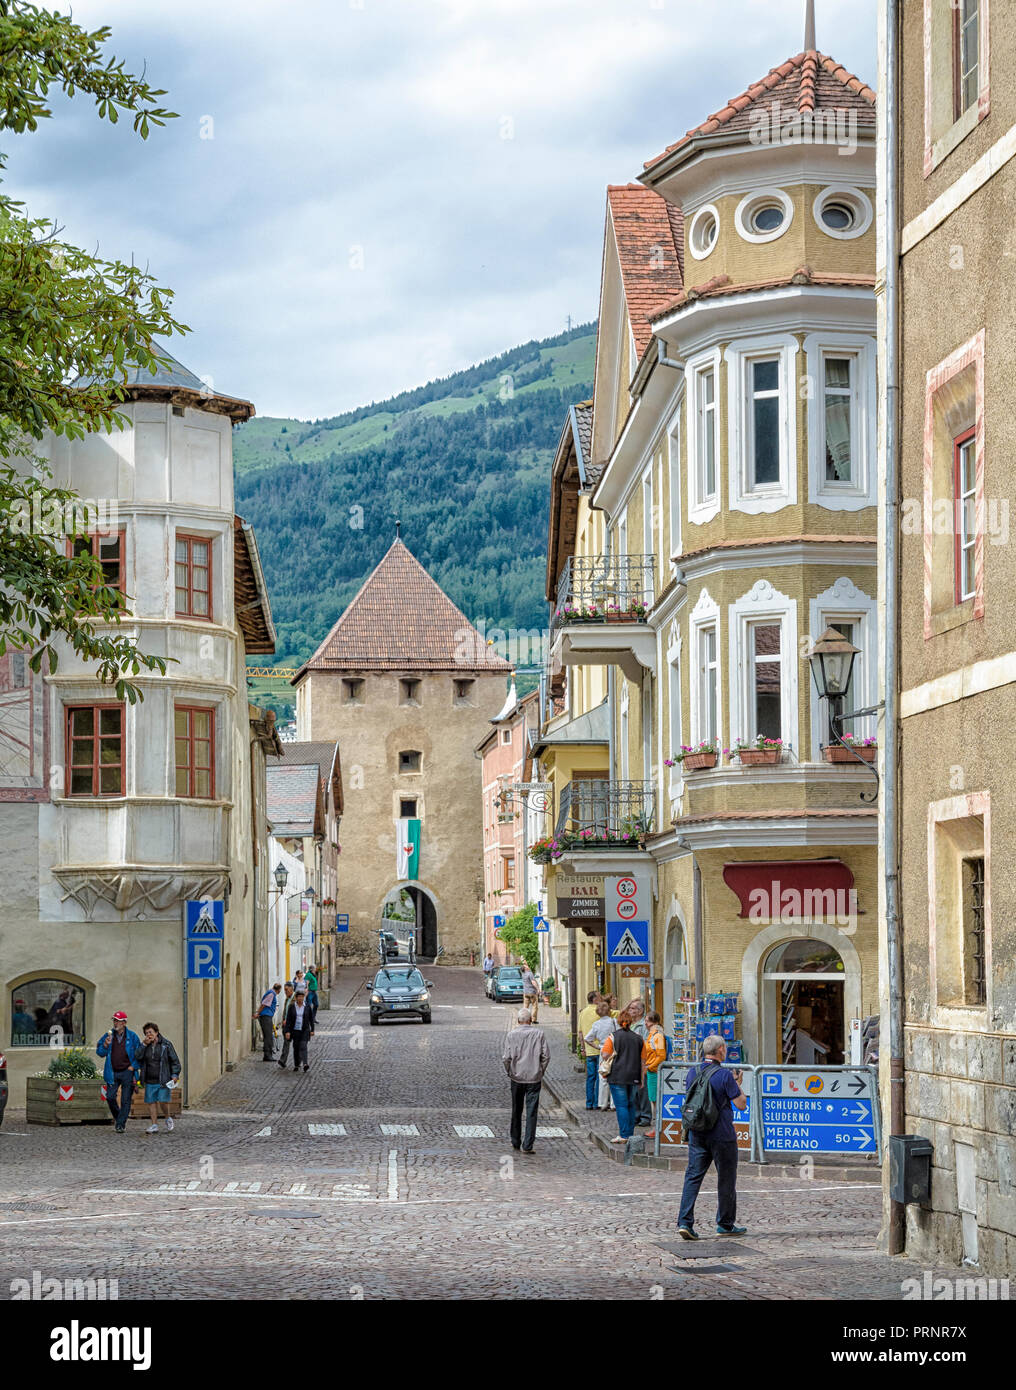 La ville historique de blois/Glurns dans le sud de malles/Mals est l'une des plus petites villes du monde. Trentin-haut-Adige/Tyrol du Sud - Italie Banque D'Images